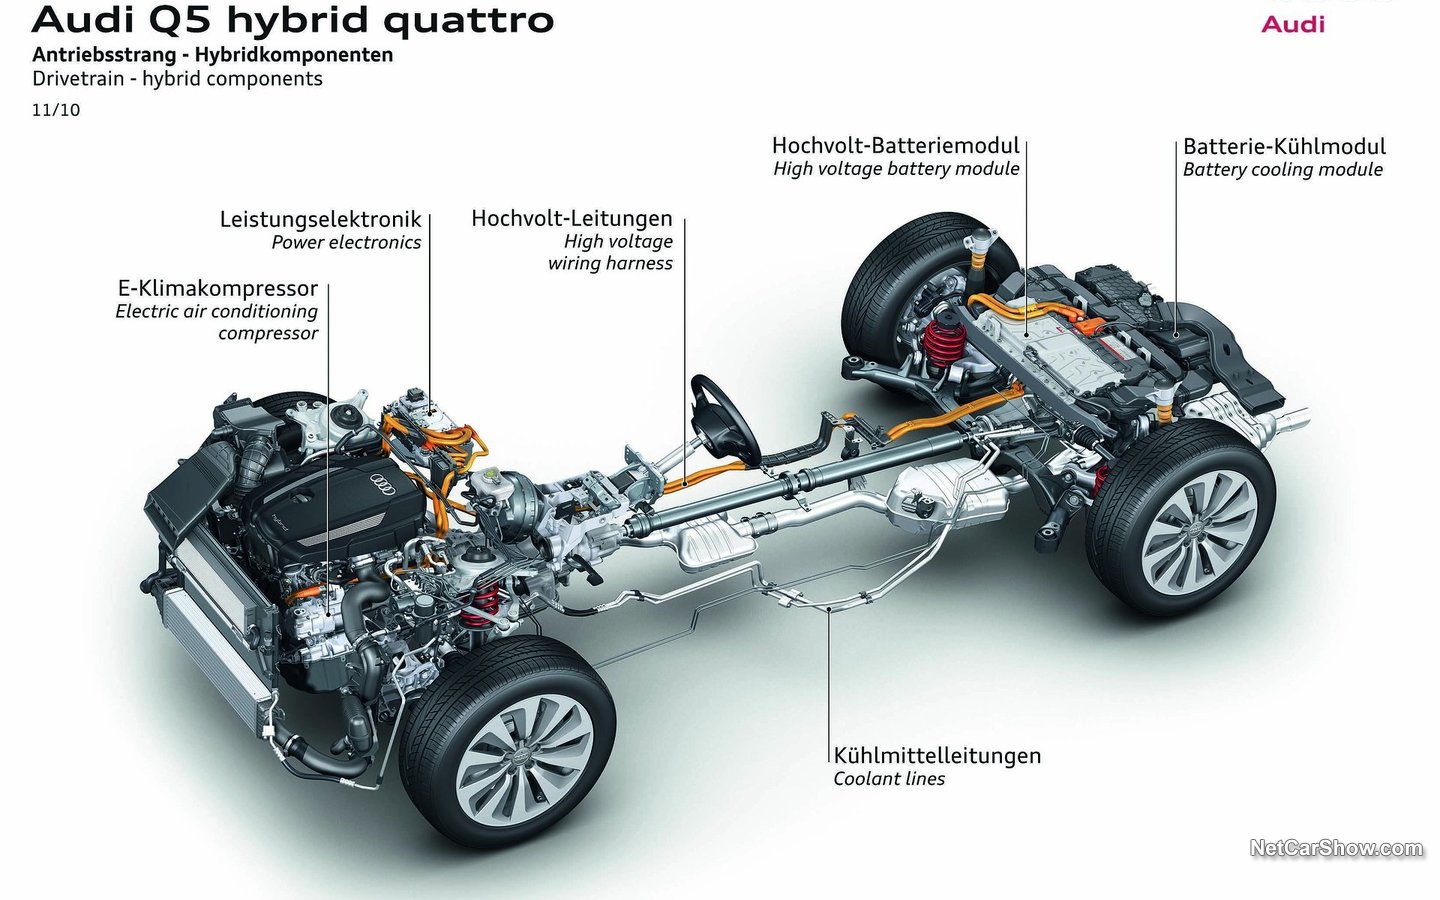 Audi Q5 Hybrid Quattro 2012 795be7f3